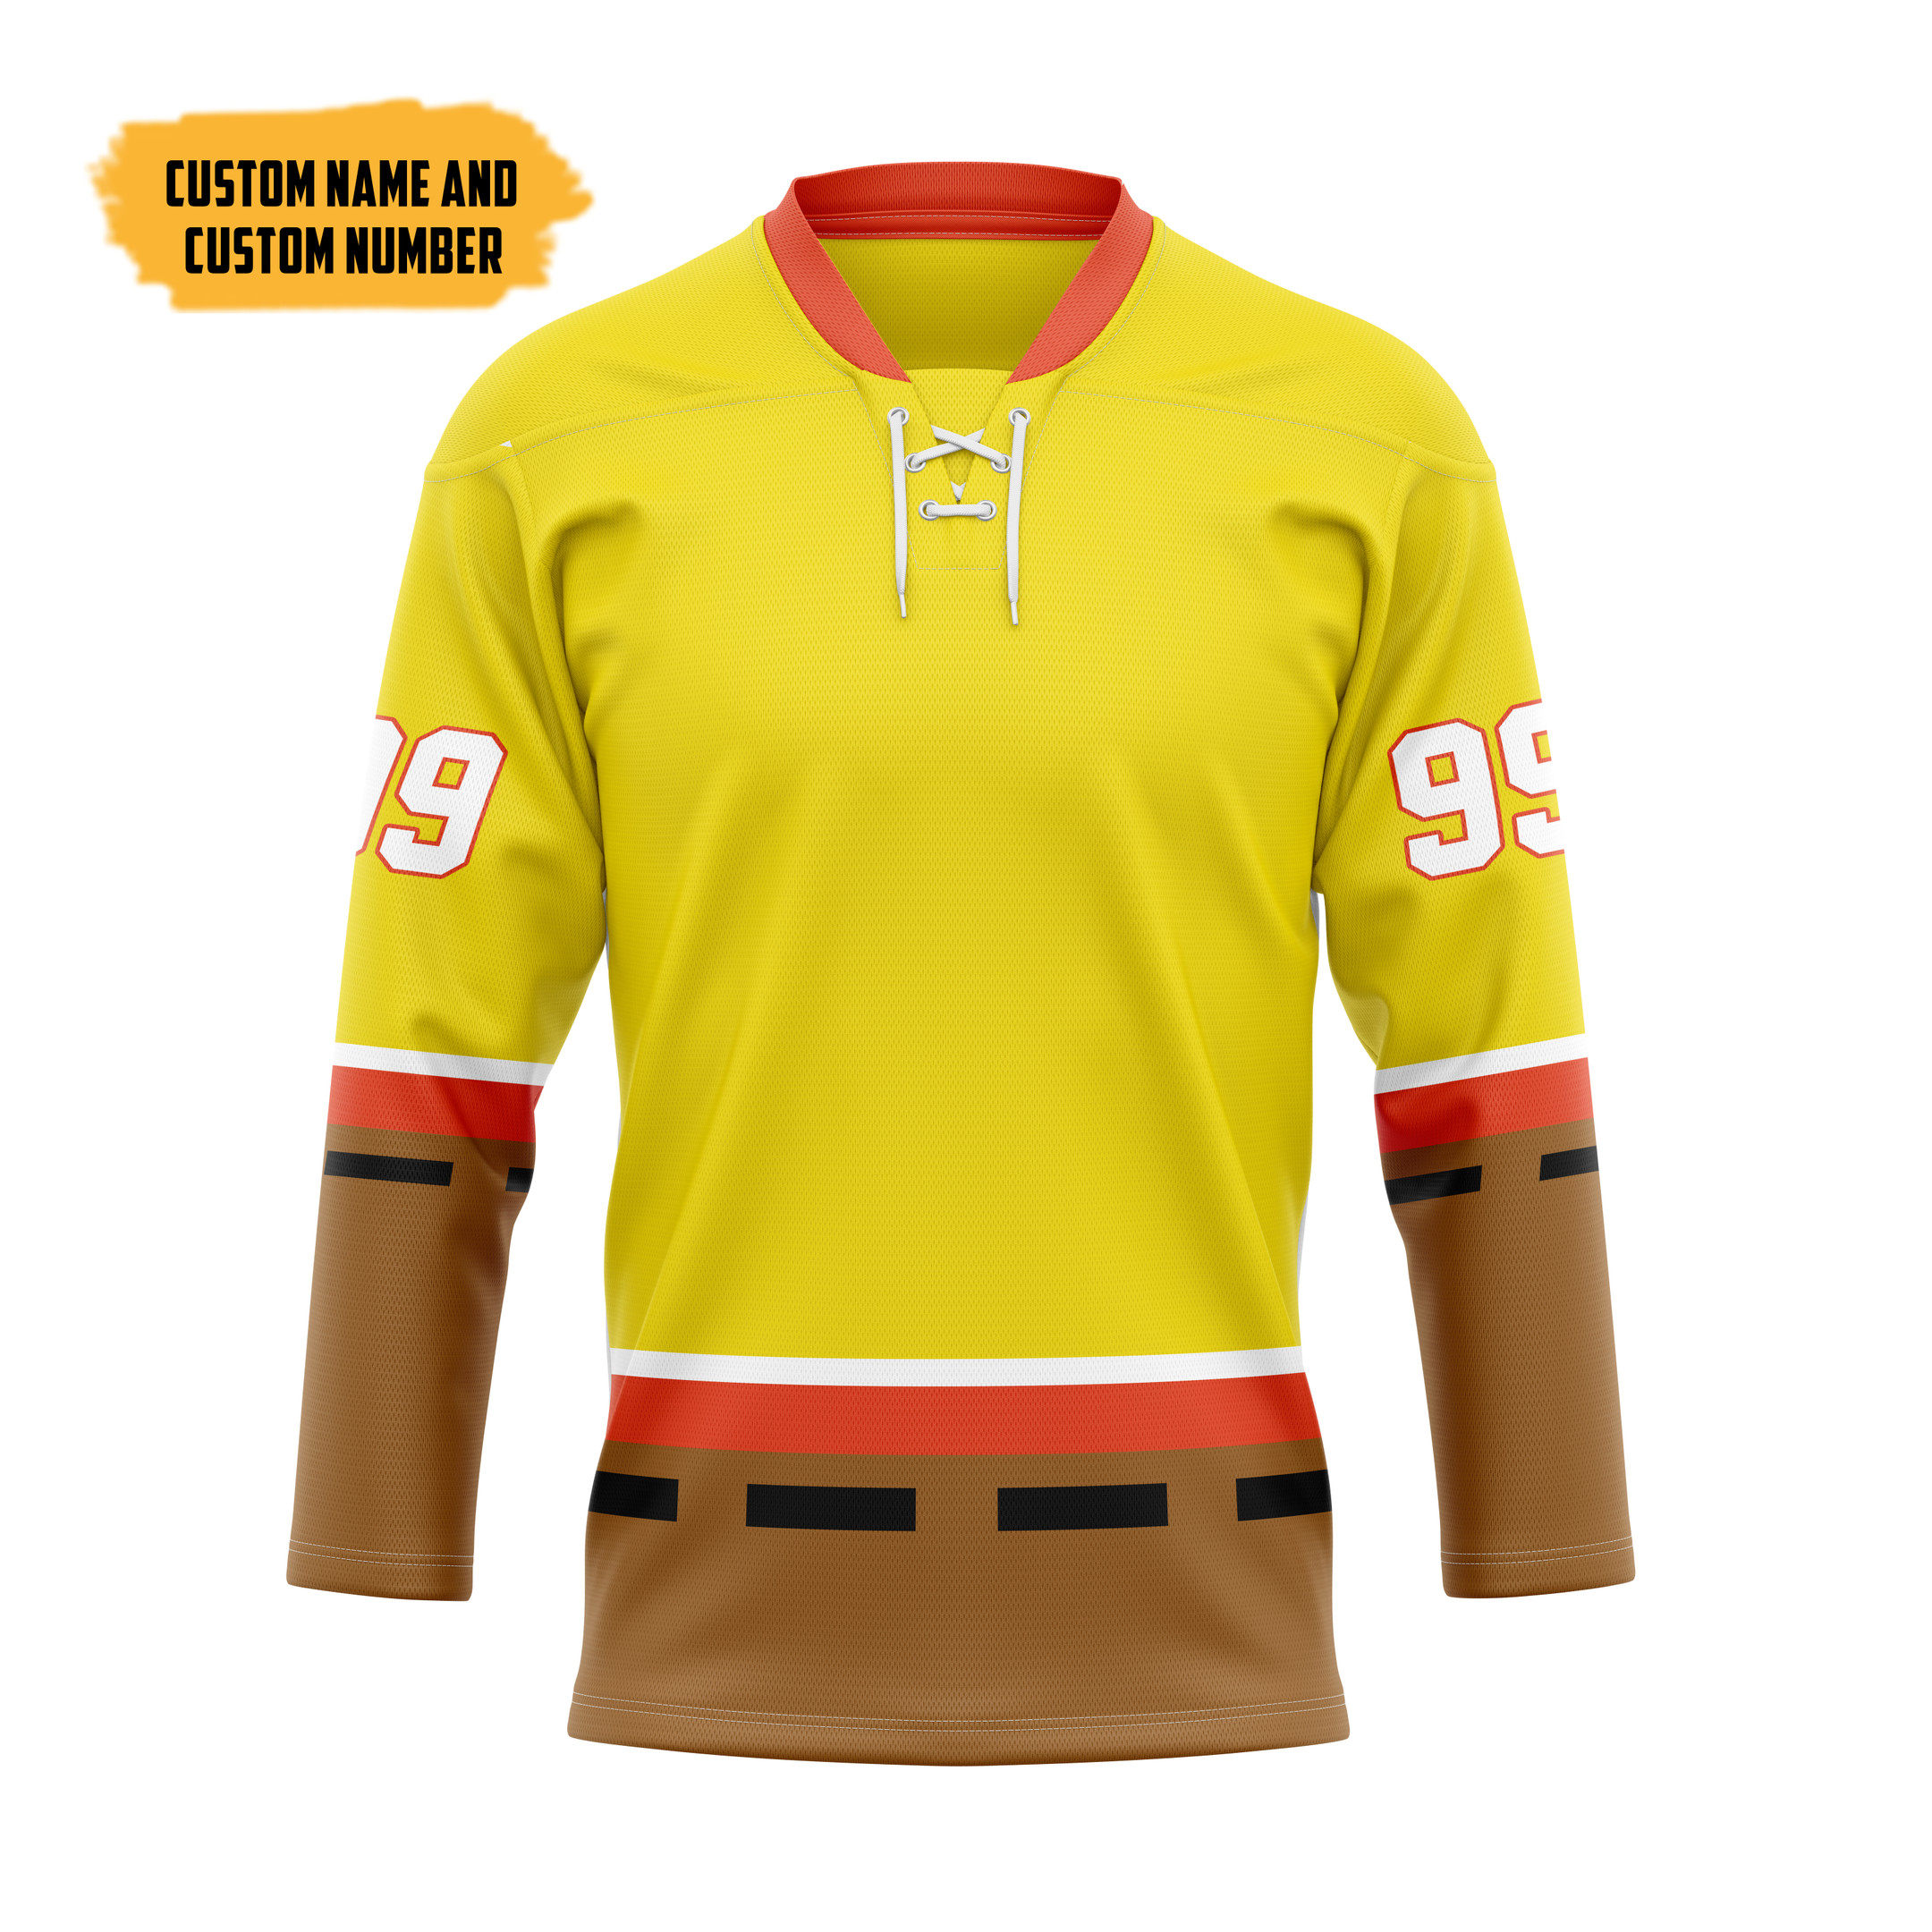 The Best Hockey Jersey Shirt 179